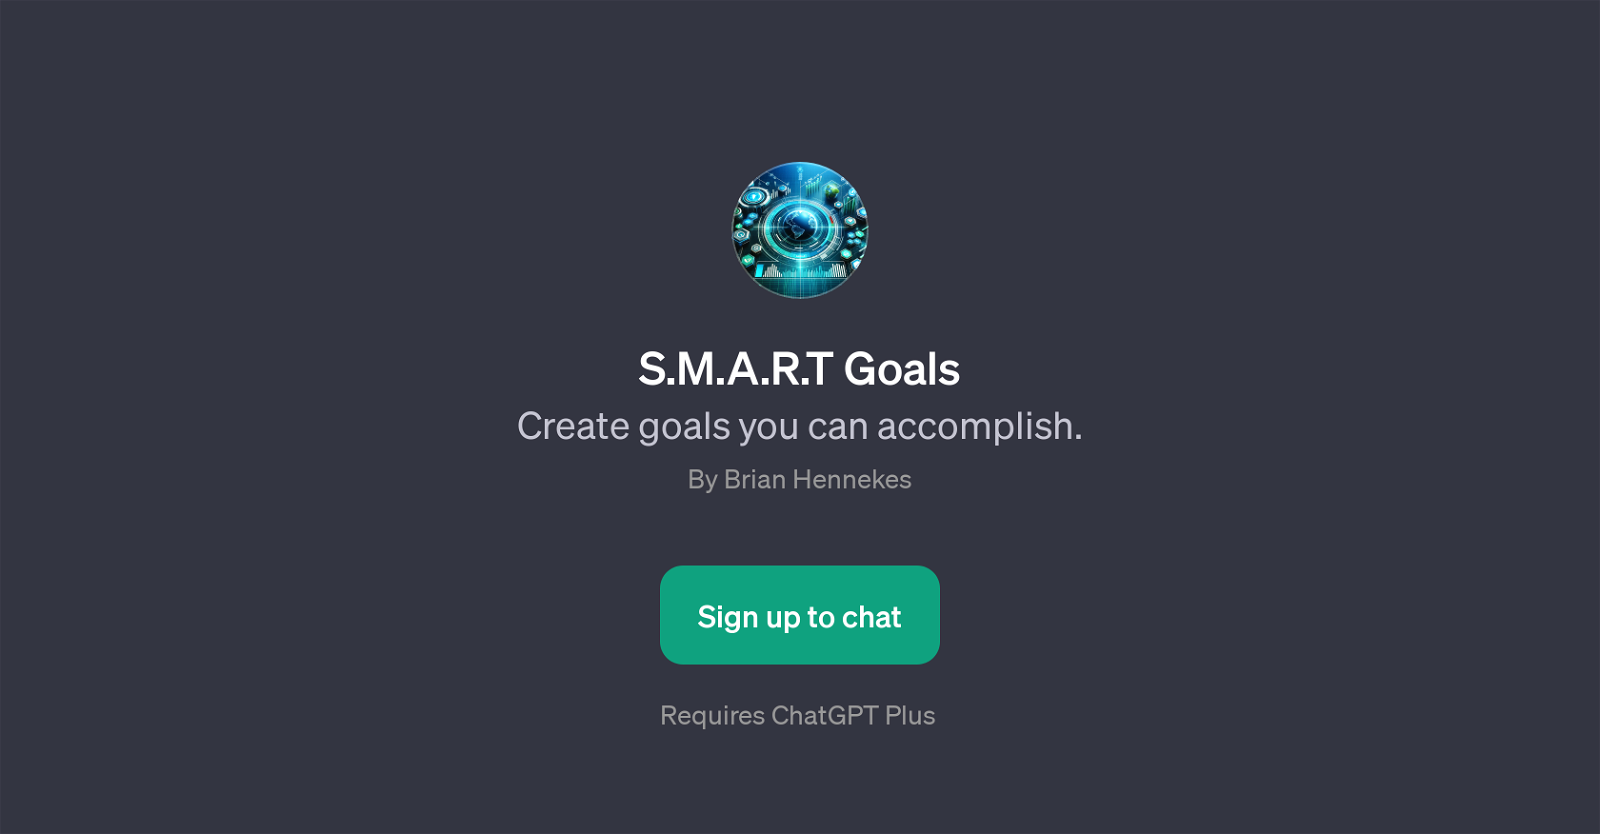 S.M.A.R.T Goals website